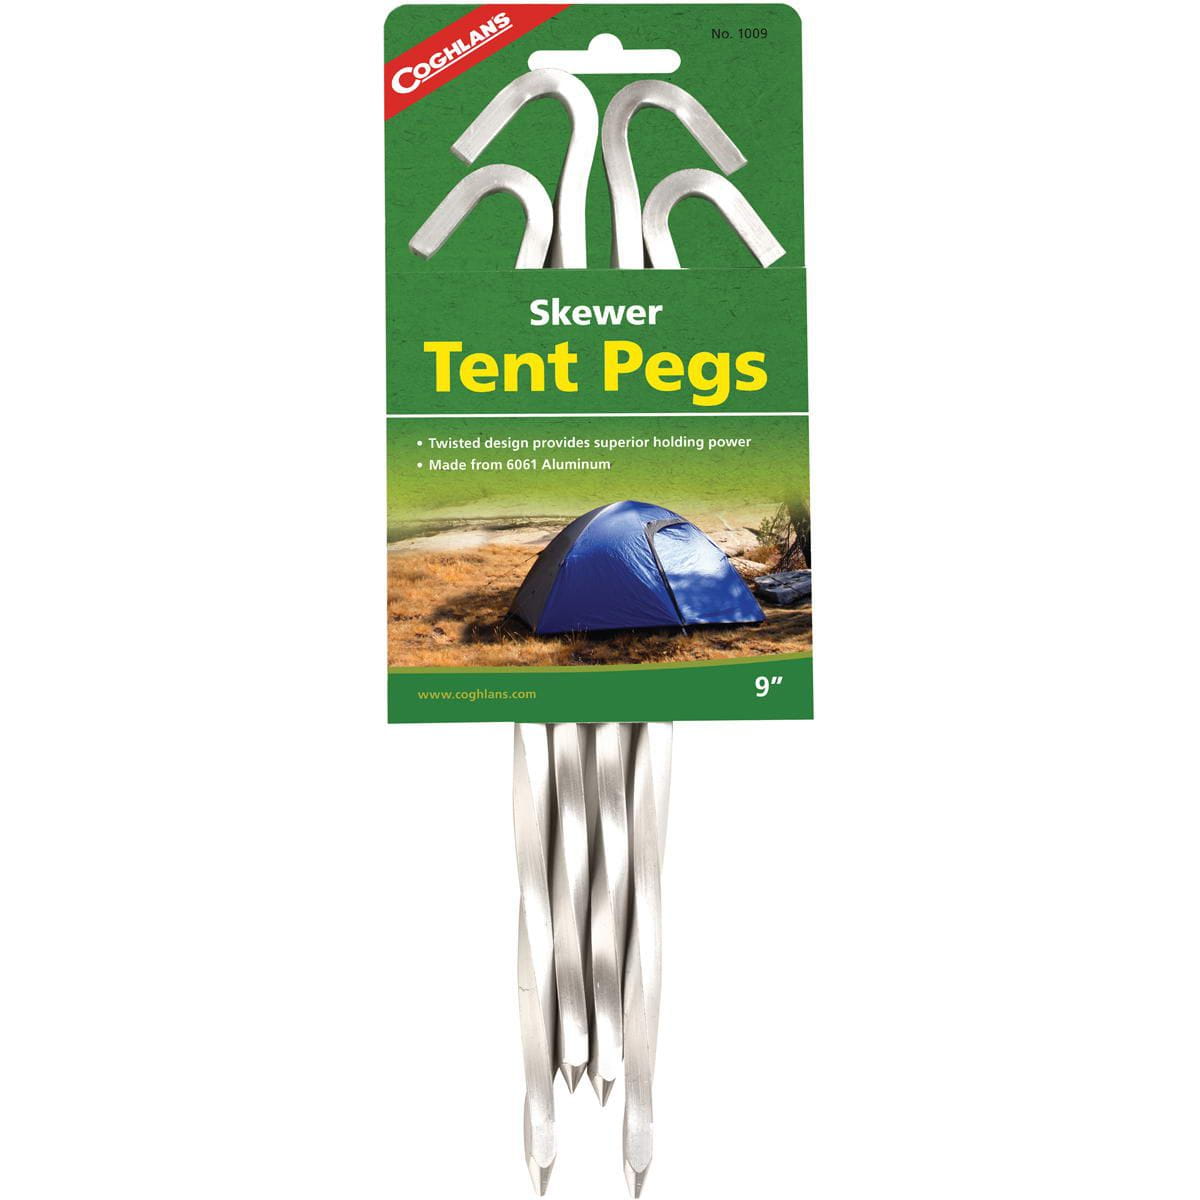 Eingängige Absatz 1/4/10 Stücke Aluminium Heringe Stakes Haken Pin Camping YE 